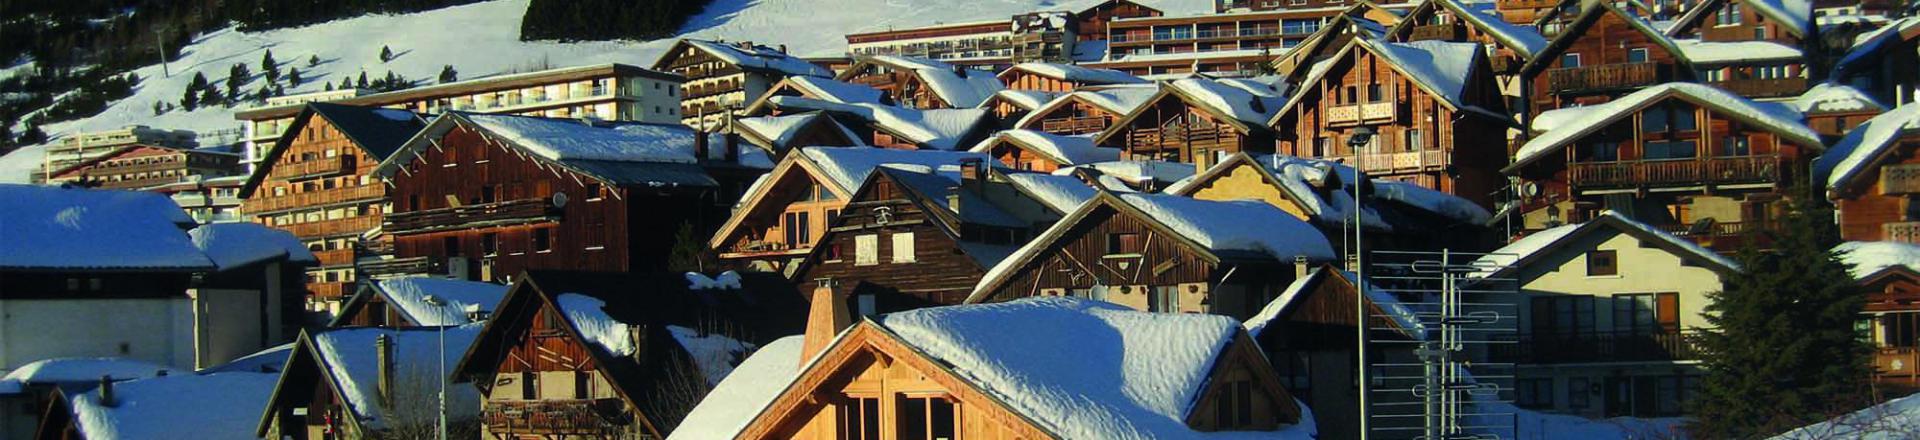 Location au ski Chalet Nightingale - Alpe d'Huez - Extérieur hiver